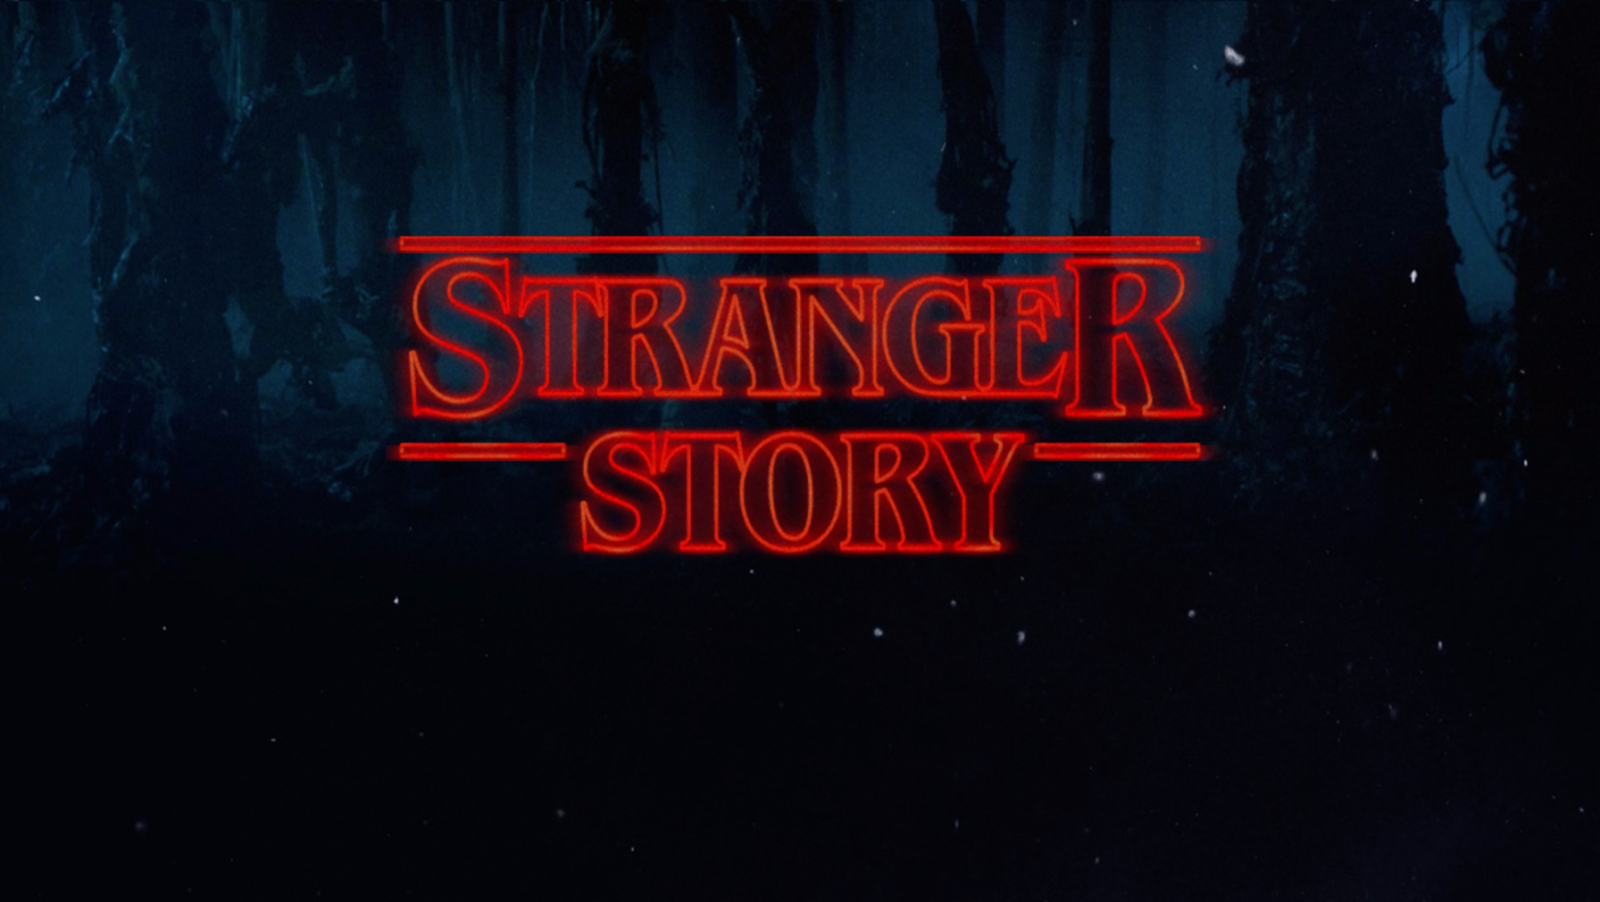 Stranger story